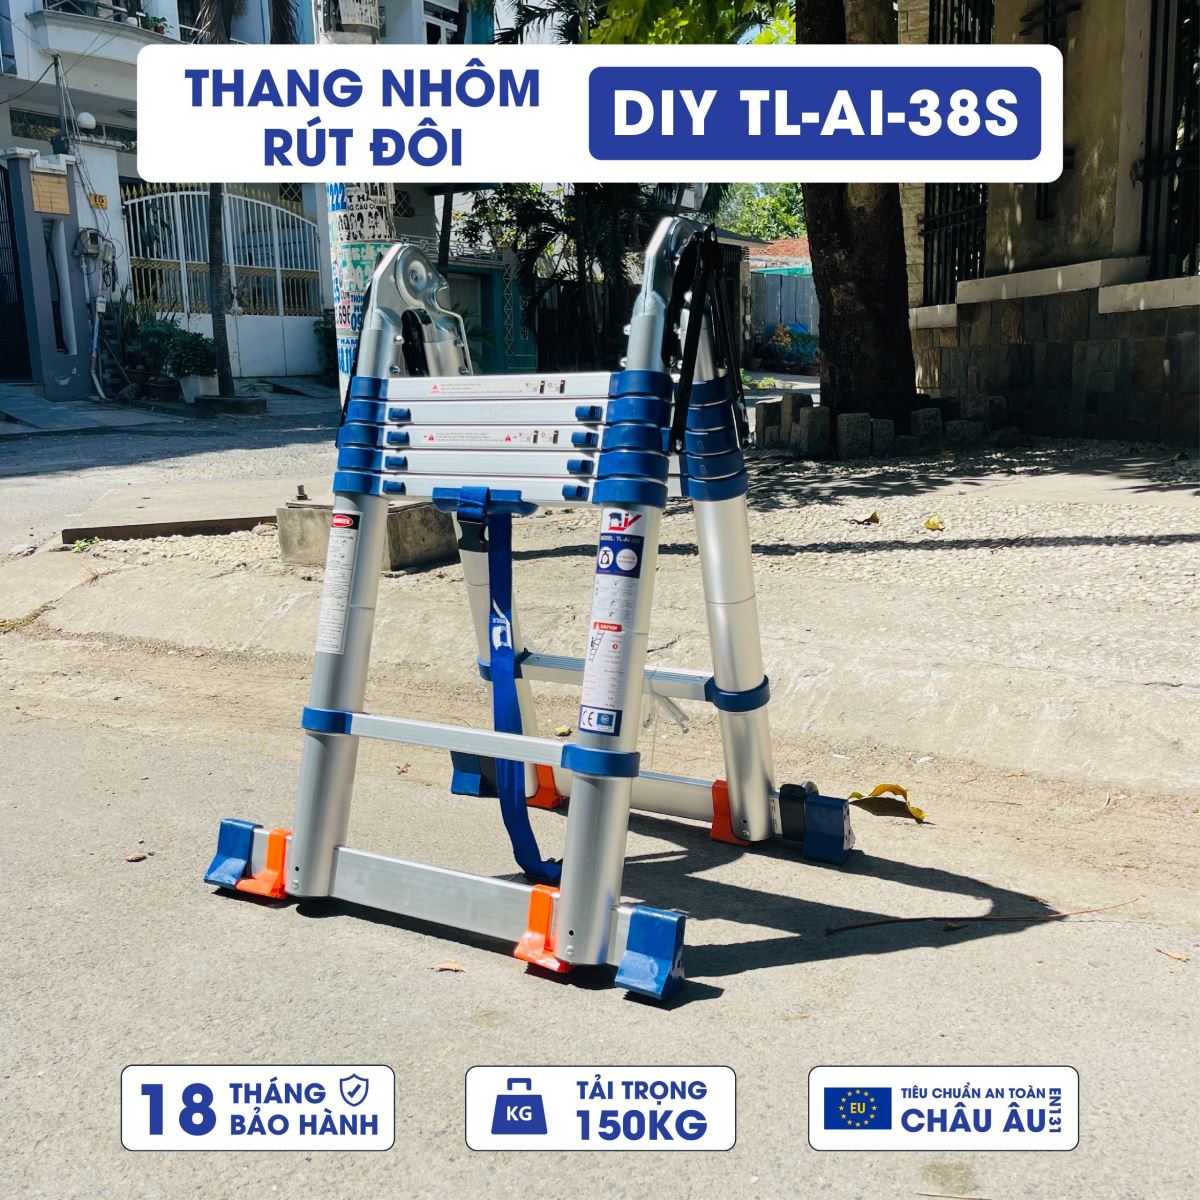 Thang nhôm rút đôi DIY TL-AI-38S